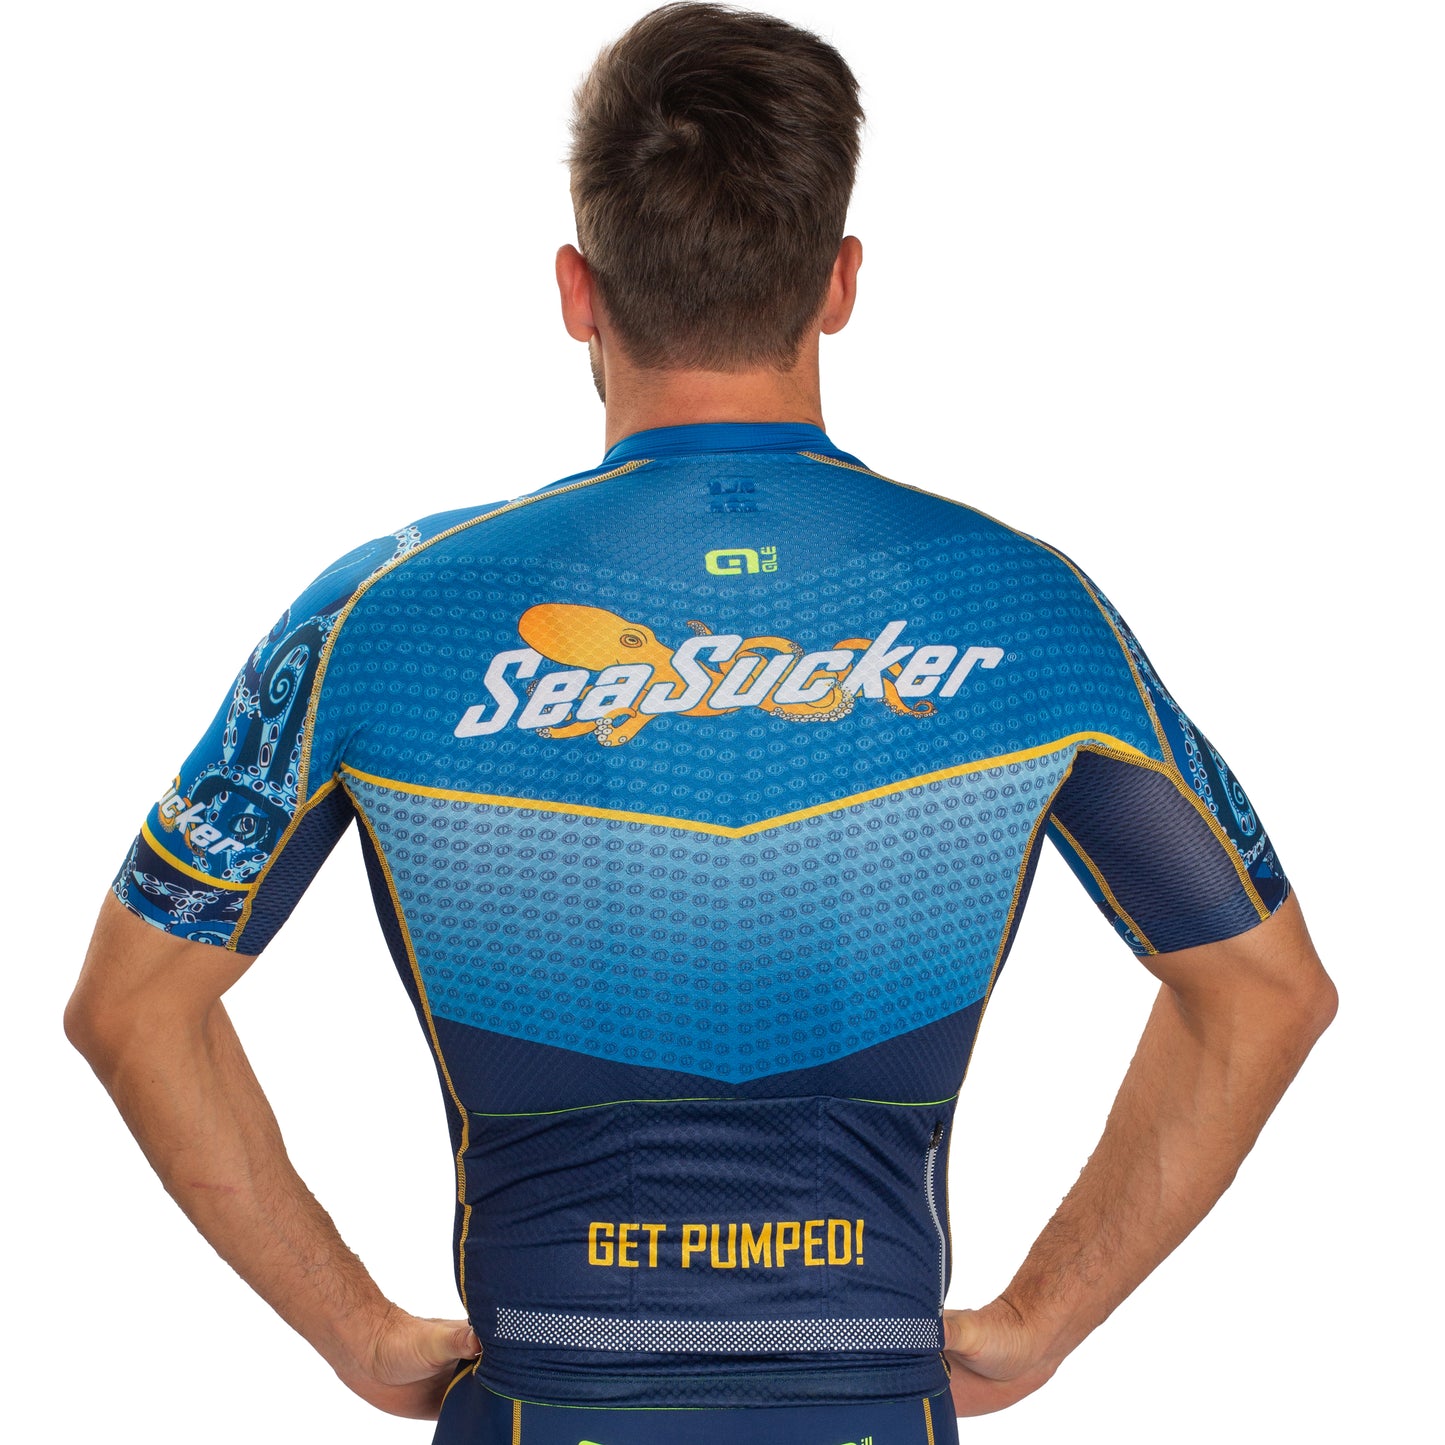 SeaSucker 2022 Men's Cycling Kit by Ale